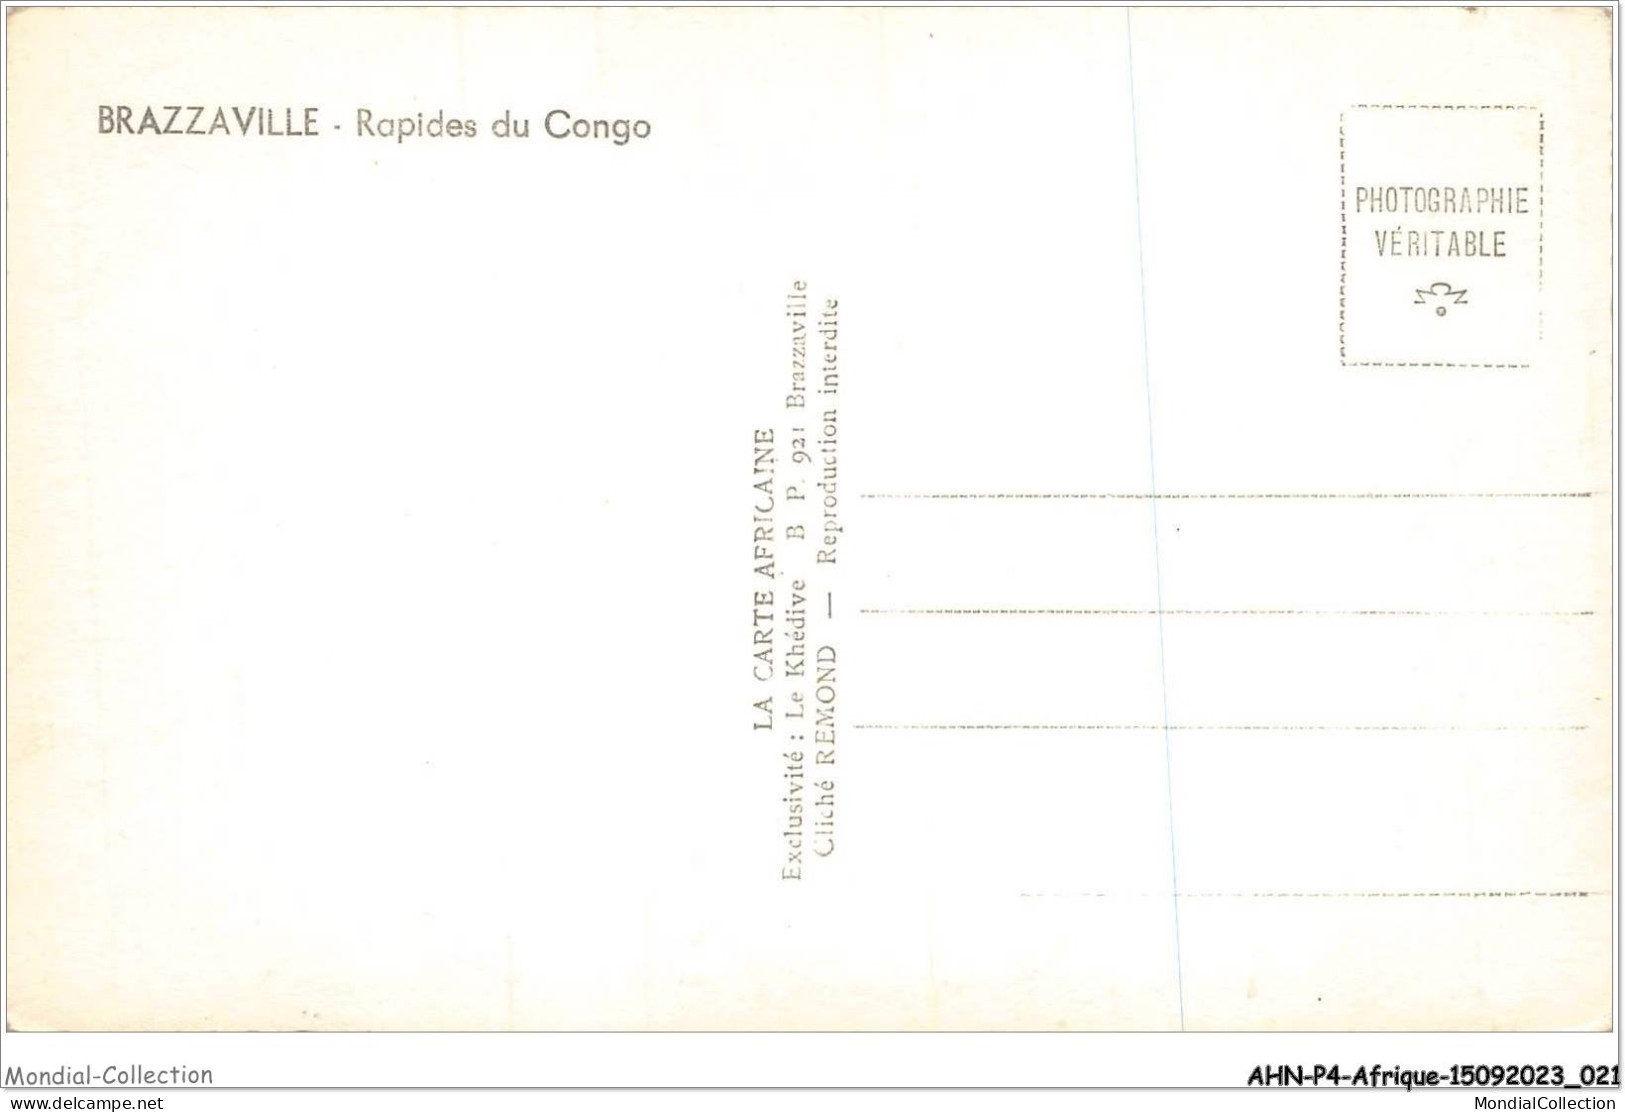 AHNP4-0401 - AFRIQUE - CONGO BRAZZAVILLE Les Rapides Du Congo - Brazzaville